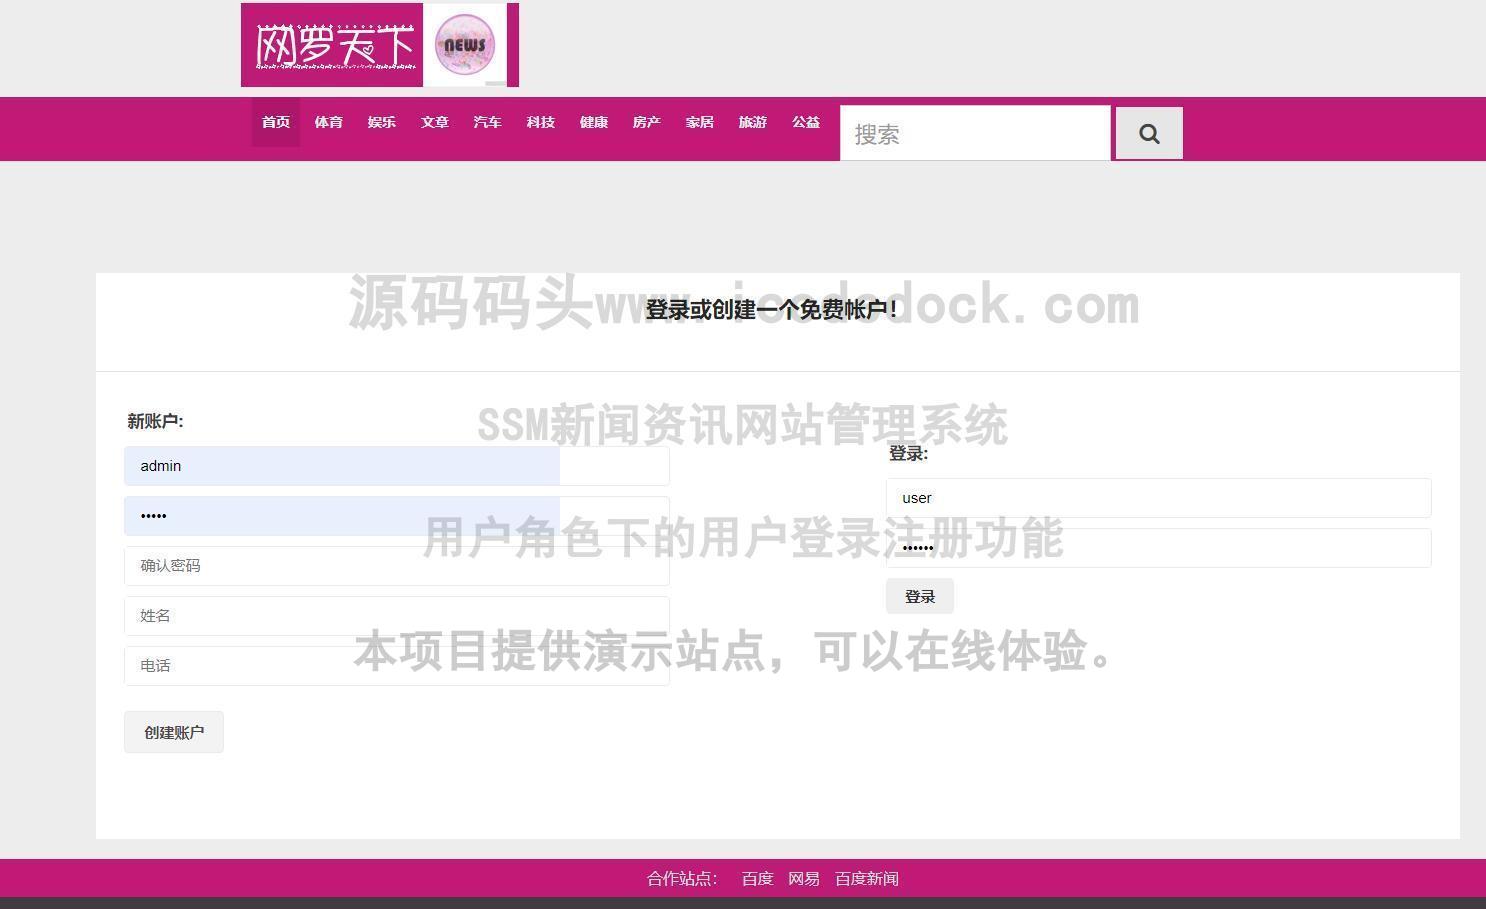 源码码头-SSH新闻资讯网站管理系统-用户角色-用户登录注册